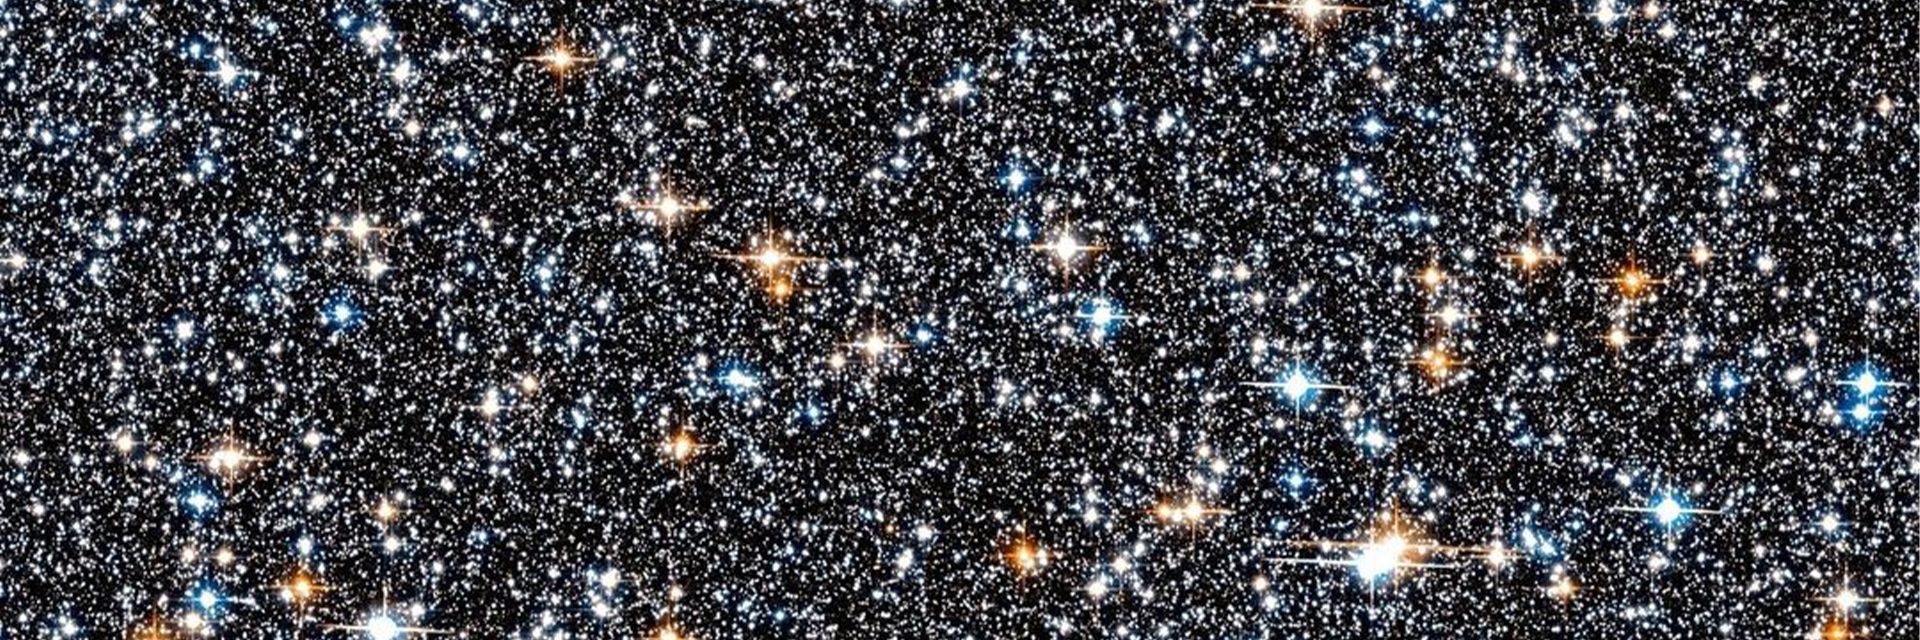 L'handle ufficiale della Nasa ha condiviso l'immagine di una collezione di questi monumenti galattici a 26,000 anni luce dalla Terra, catturata dal telescopio Hubble.